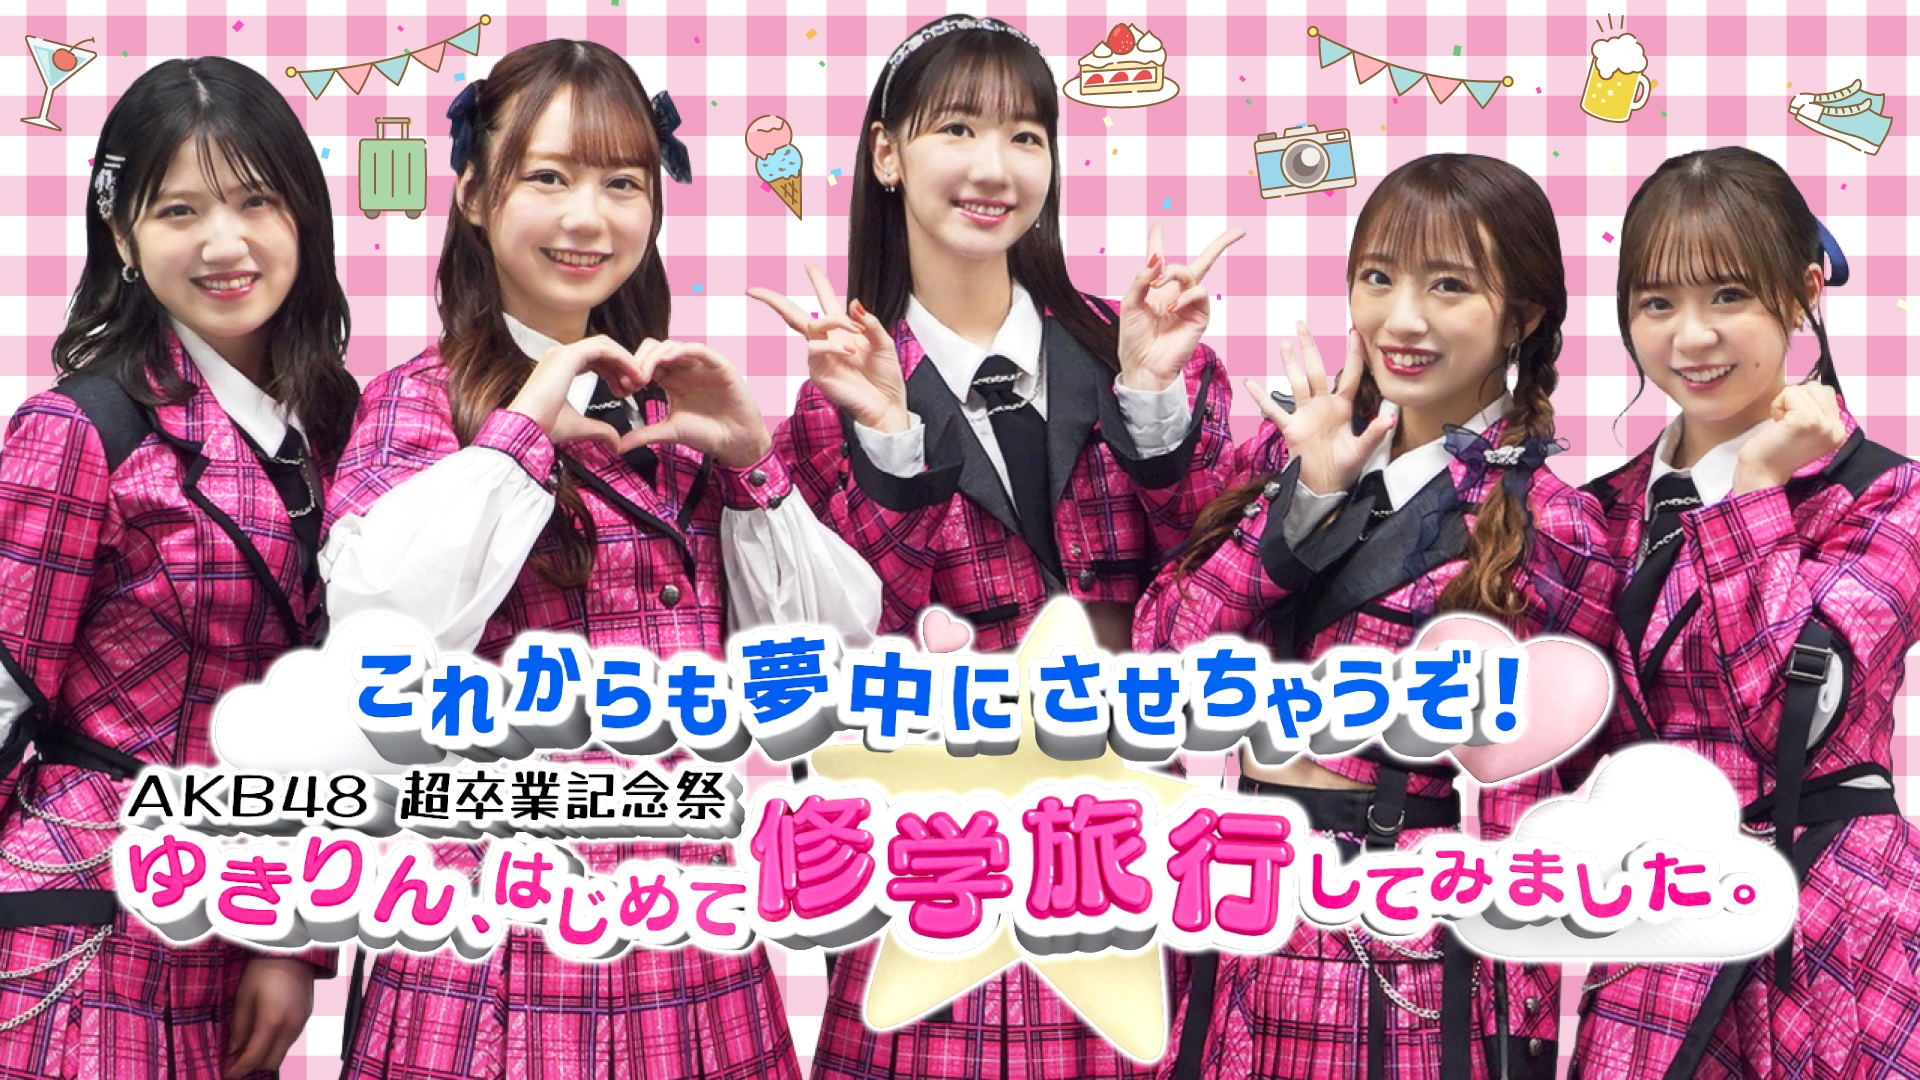 無料テレビでこれからも夢中にさせちゃうぞ！AKB48超卒業記念祭 ゆきりん、はじめて修学旅行してみました。《福岡放送》を視聴する